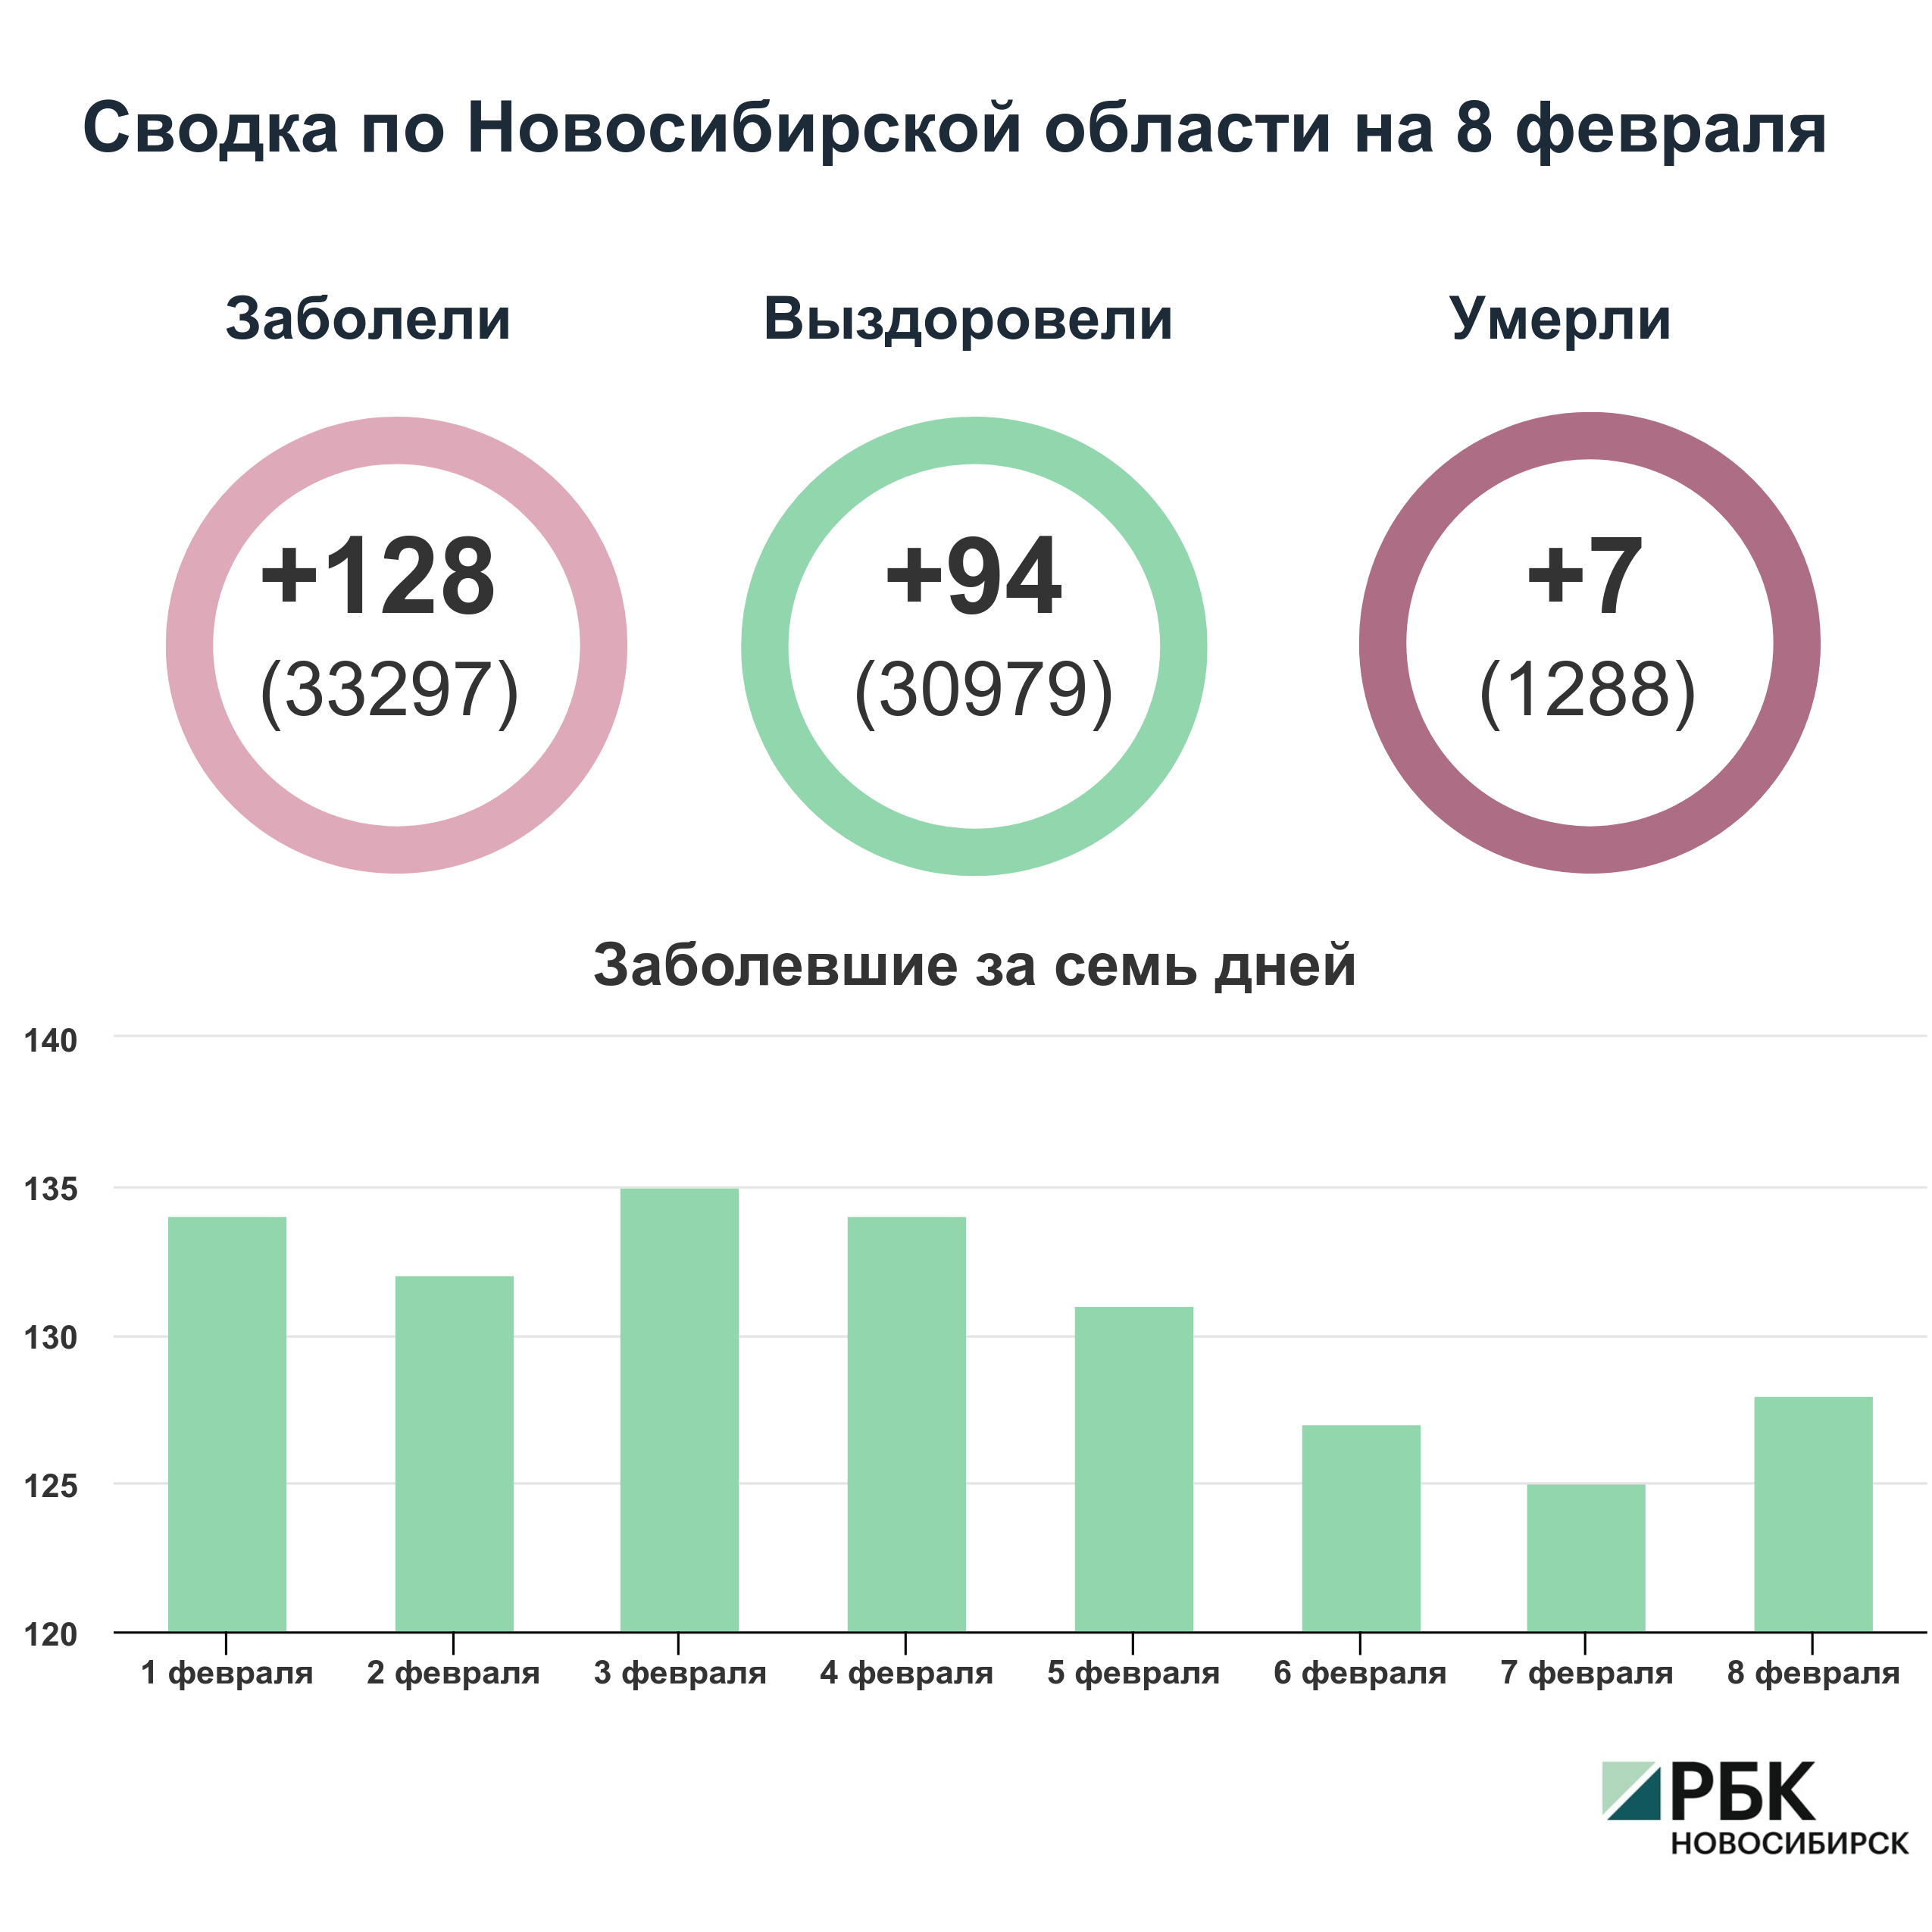 Коронавирус в Новосибирске: сводка на 8 февраля